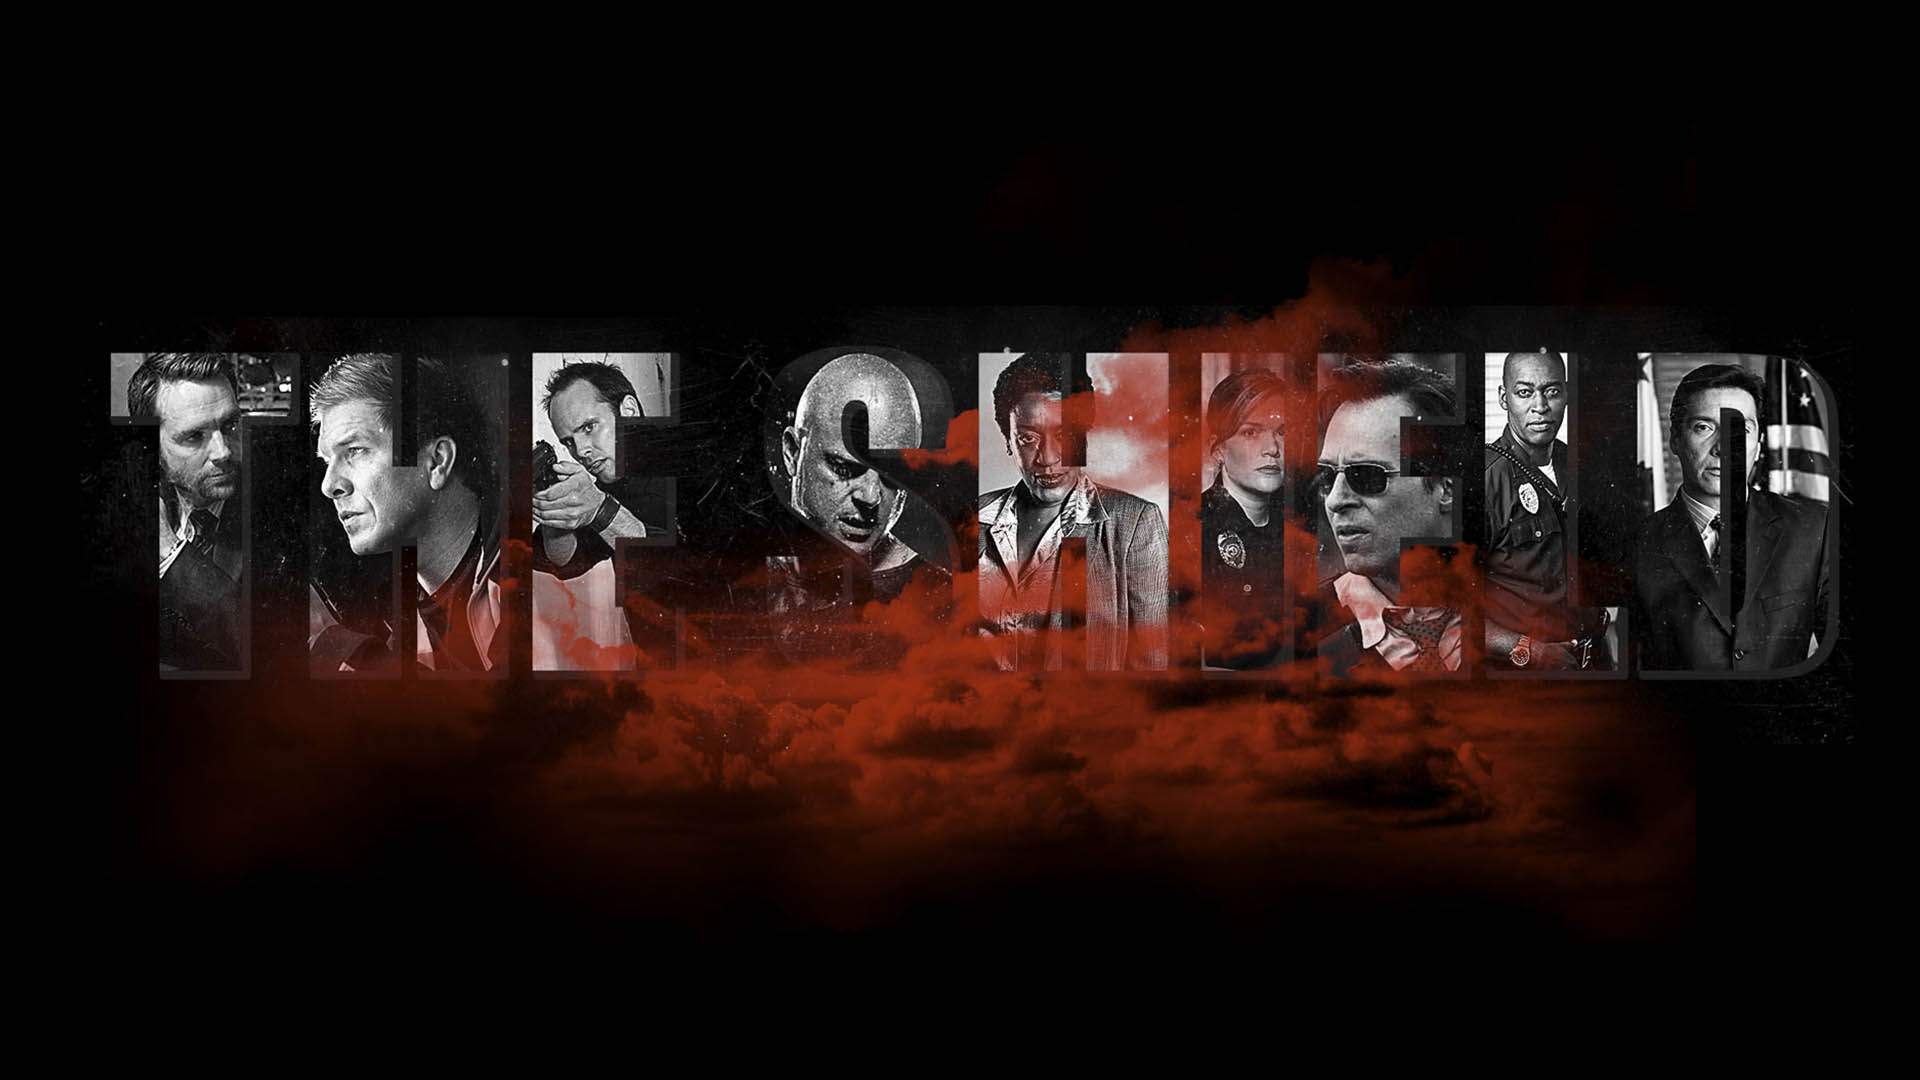 پوستر سریال The Shield با حضور شخصیت های اصلی آن در حروف اسم این سریال 